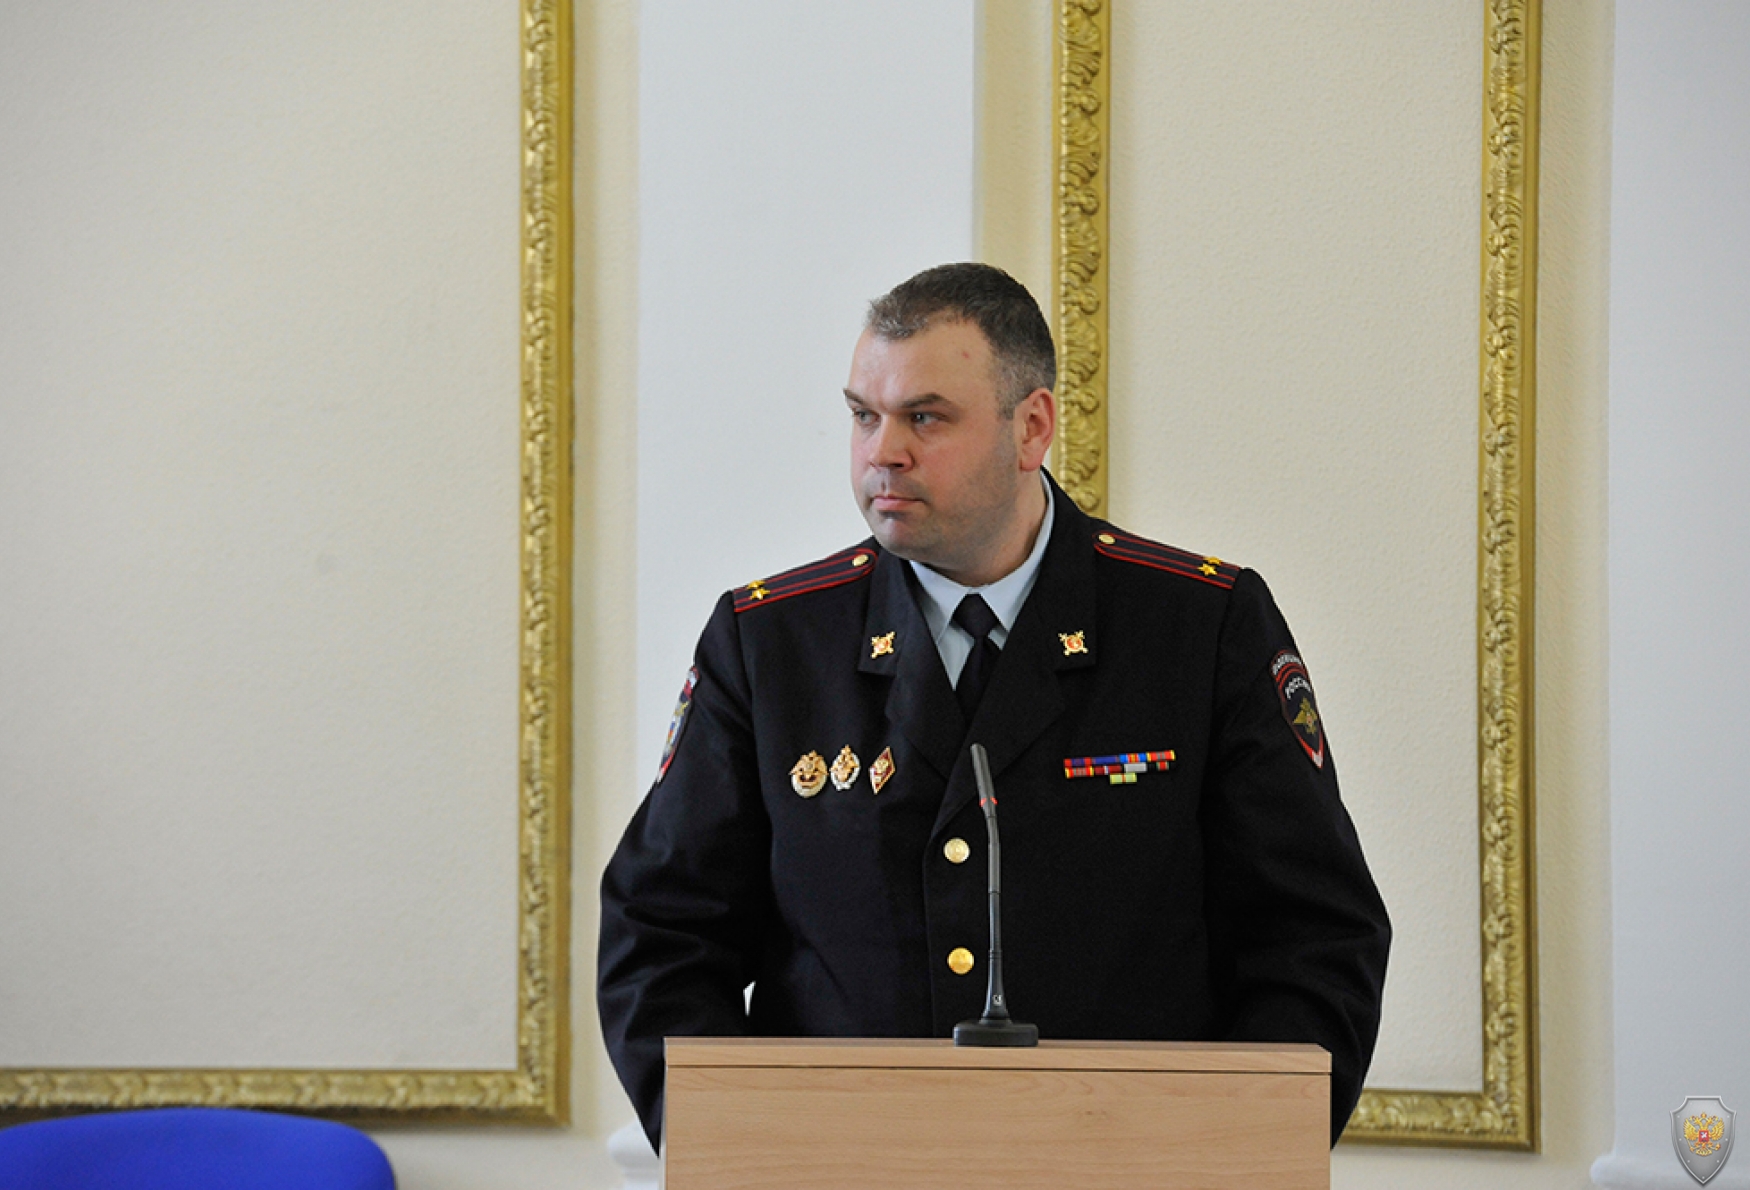 Заседание антитеррористической комиссии Брянской области